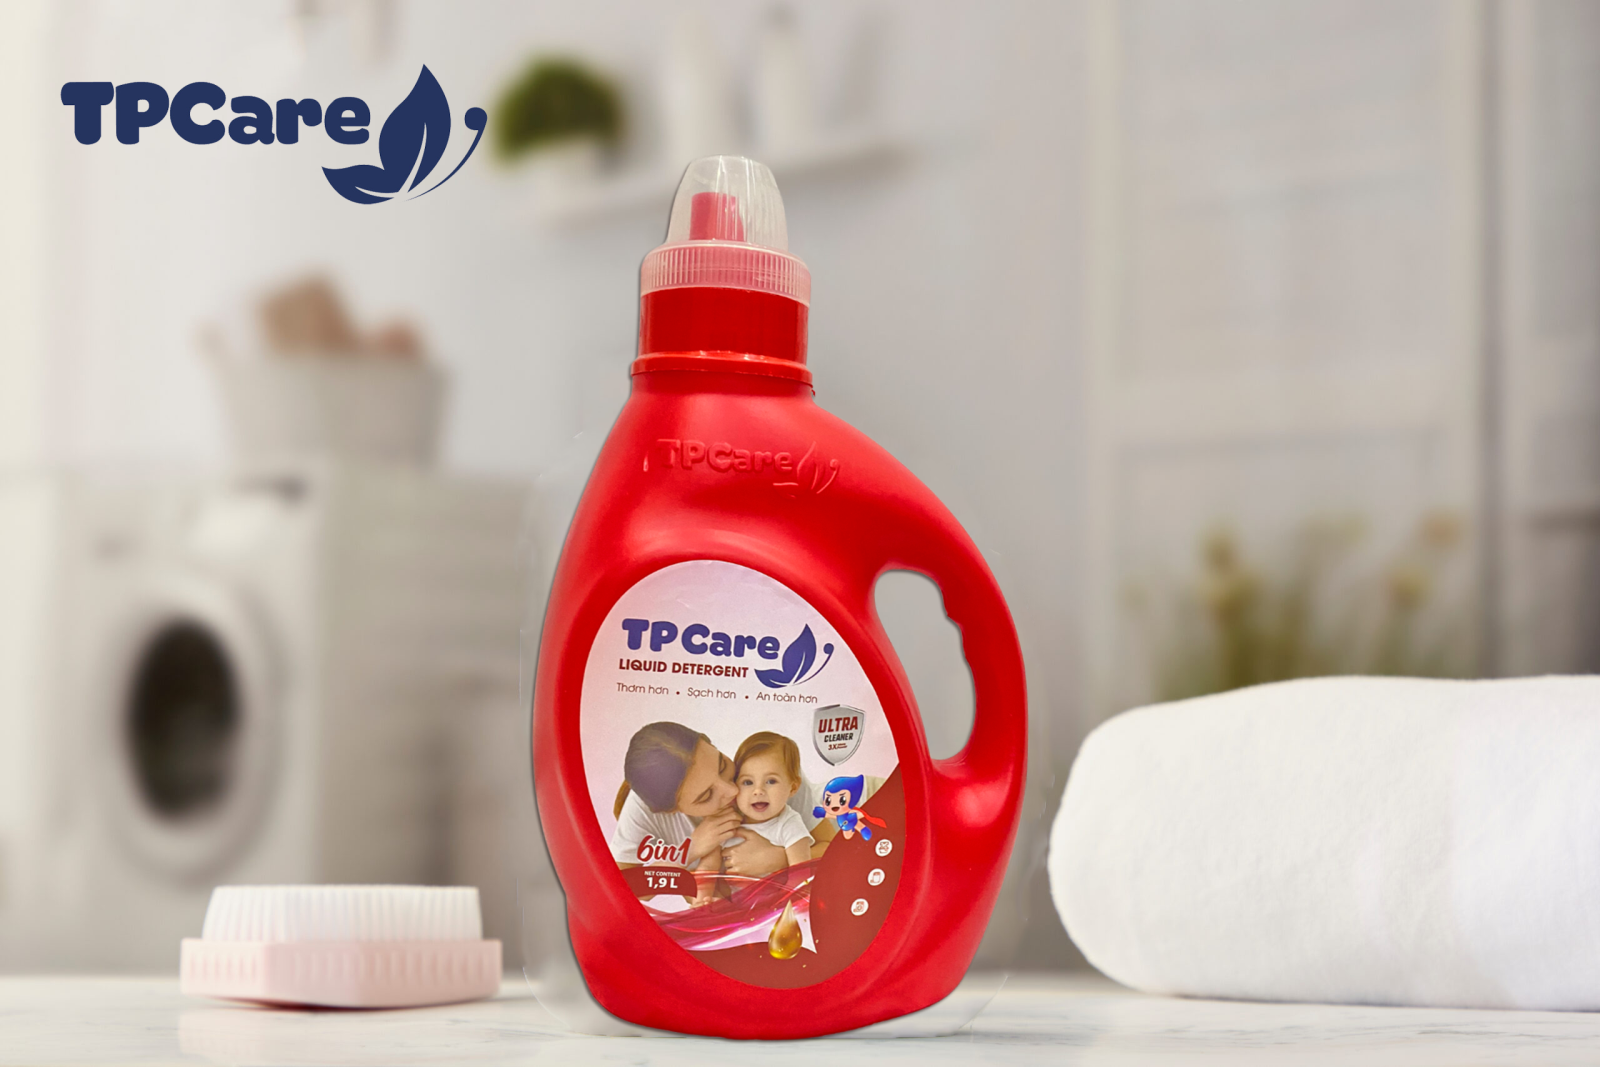 Có thể sử dụng nước giặt TPCare cho bé không?